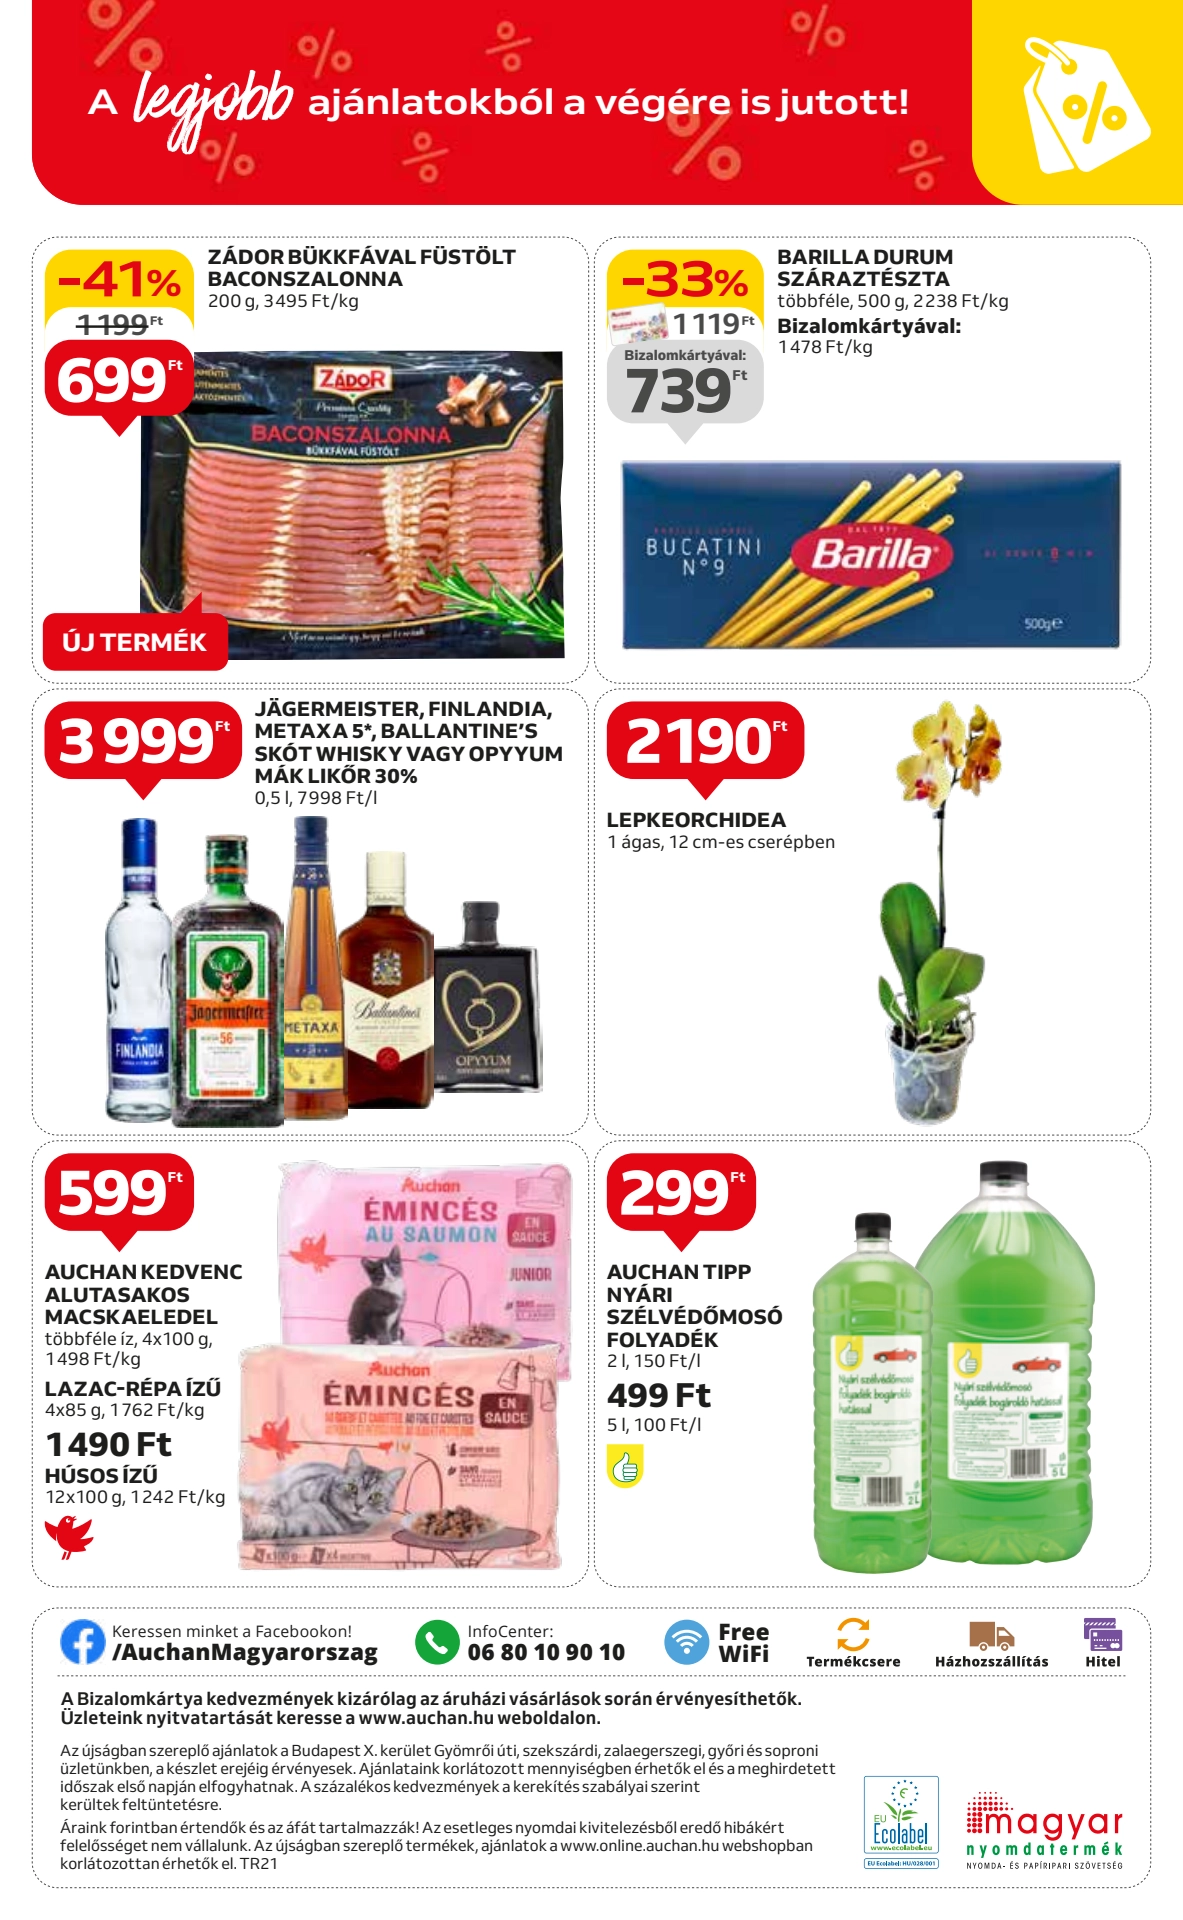 auchan-szupermarket akciós újság 12 oldal